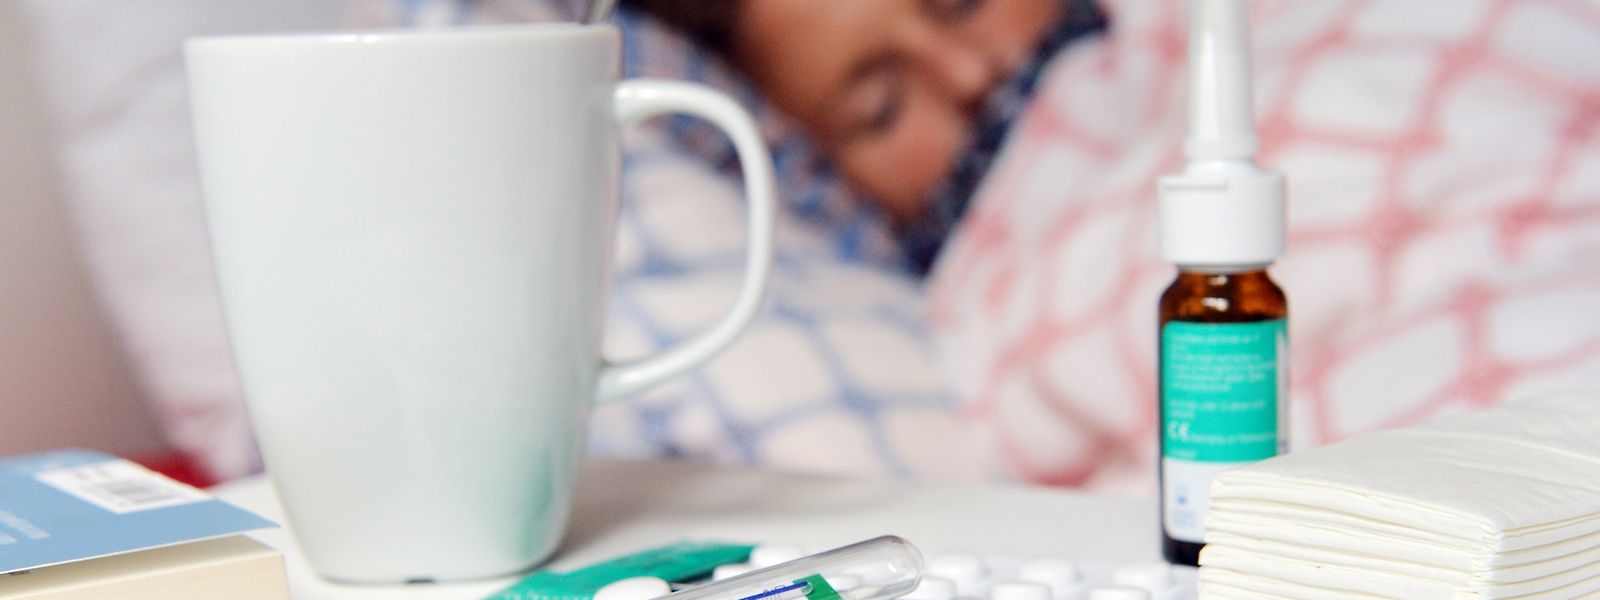 Eine Grippe tritt sehr plötzlich auf: Betroffene fühlen sich schlapp und liegen oft tagelang im Bett. Eine Impfung kann davor schützen. 